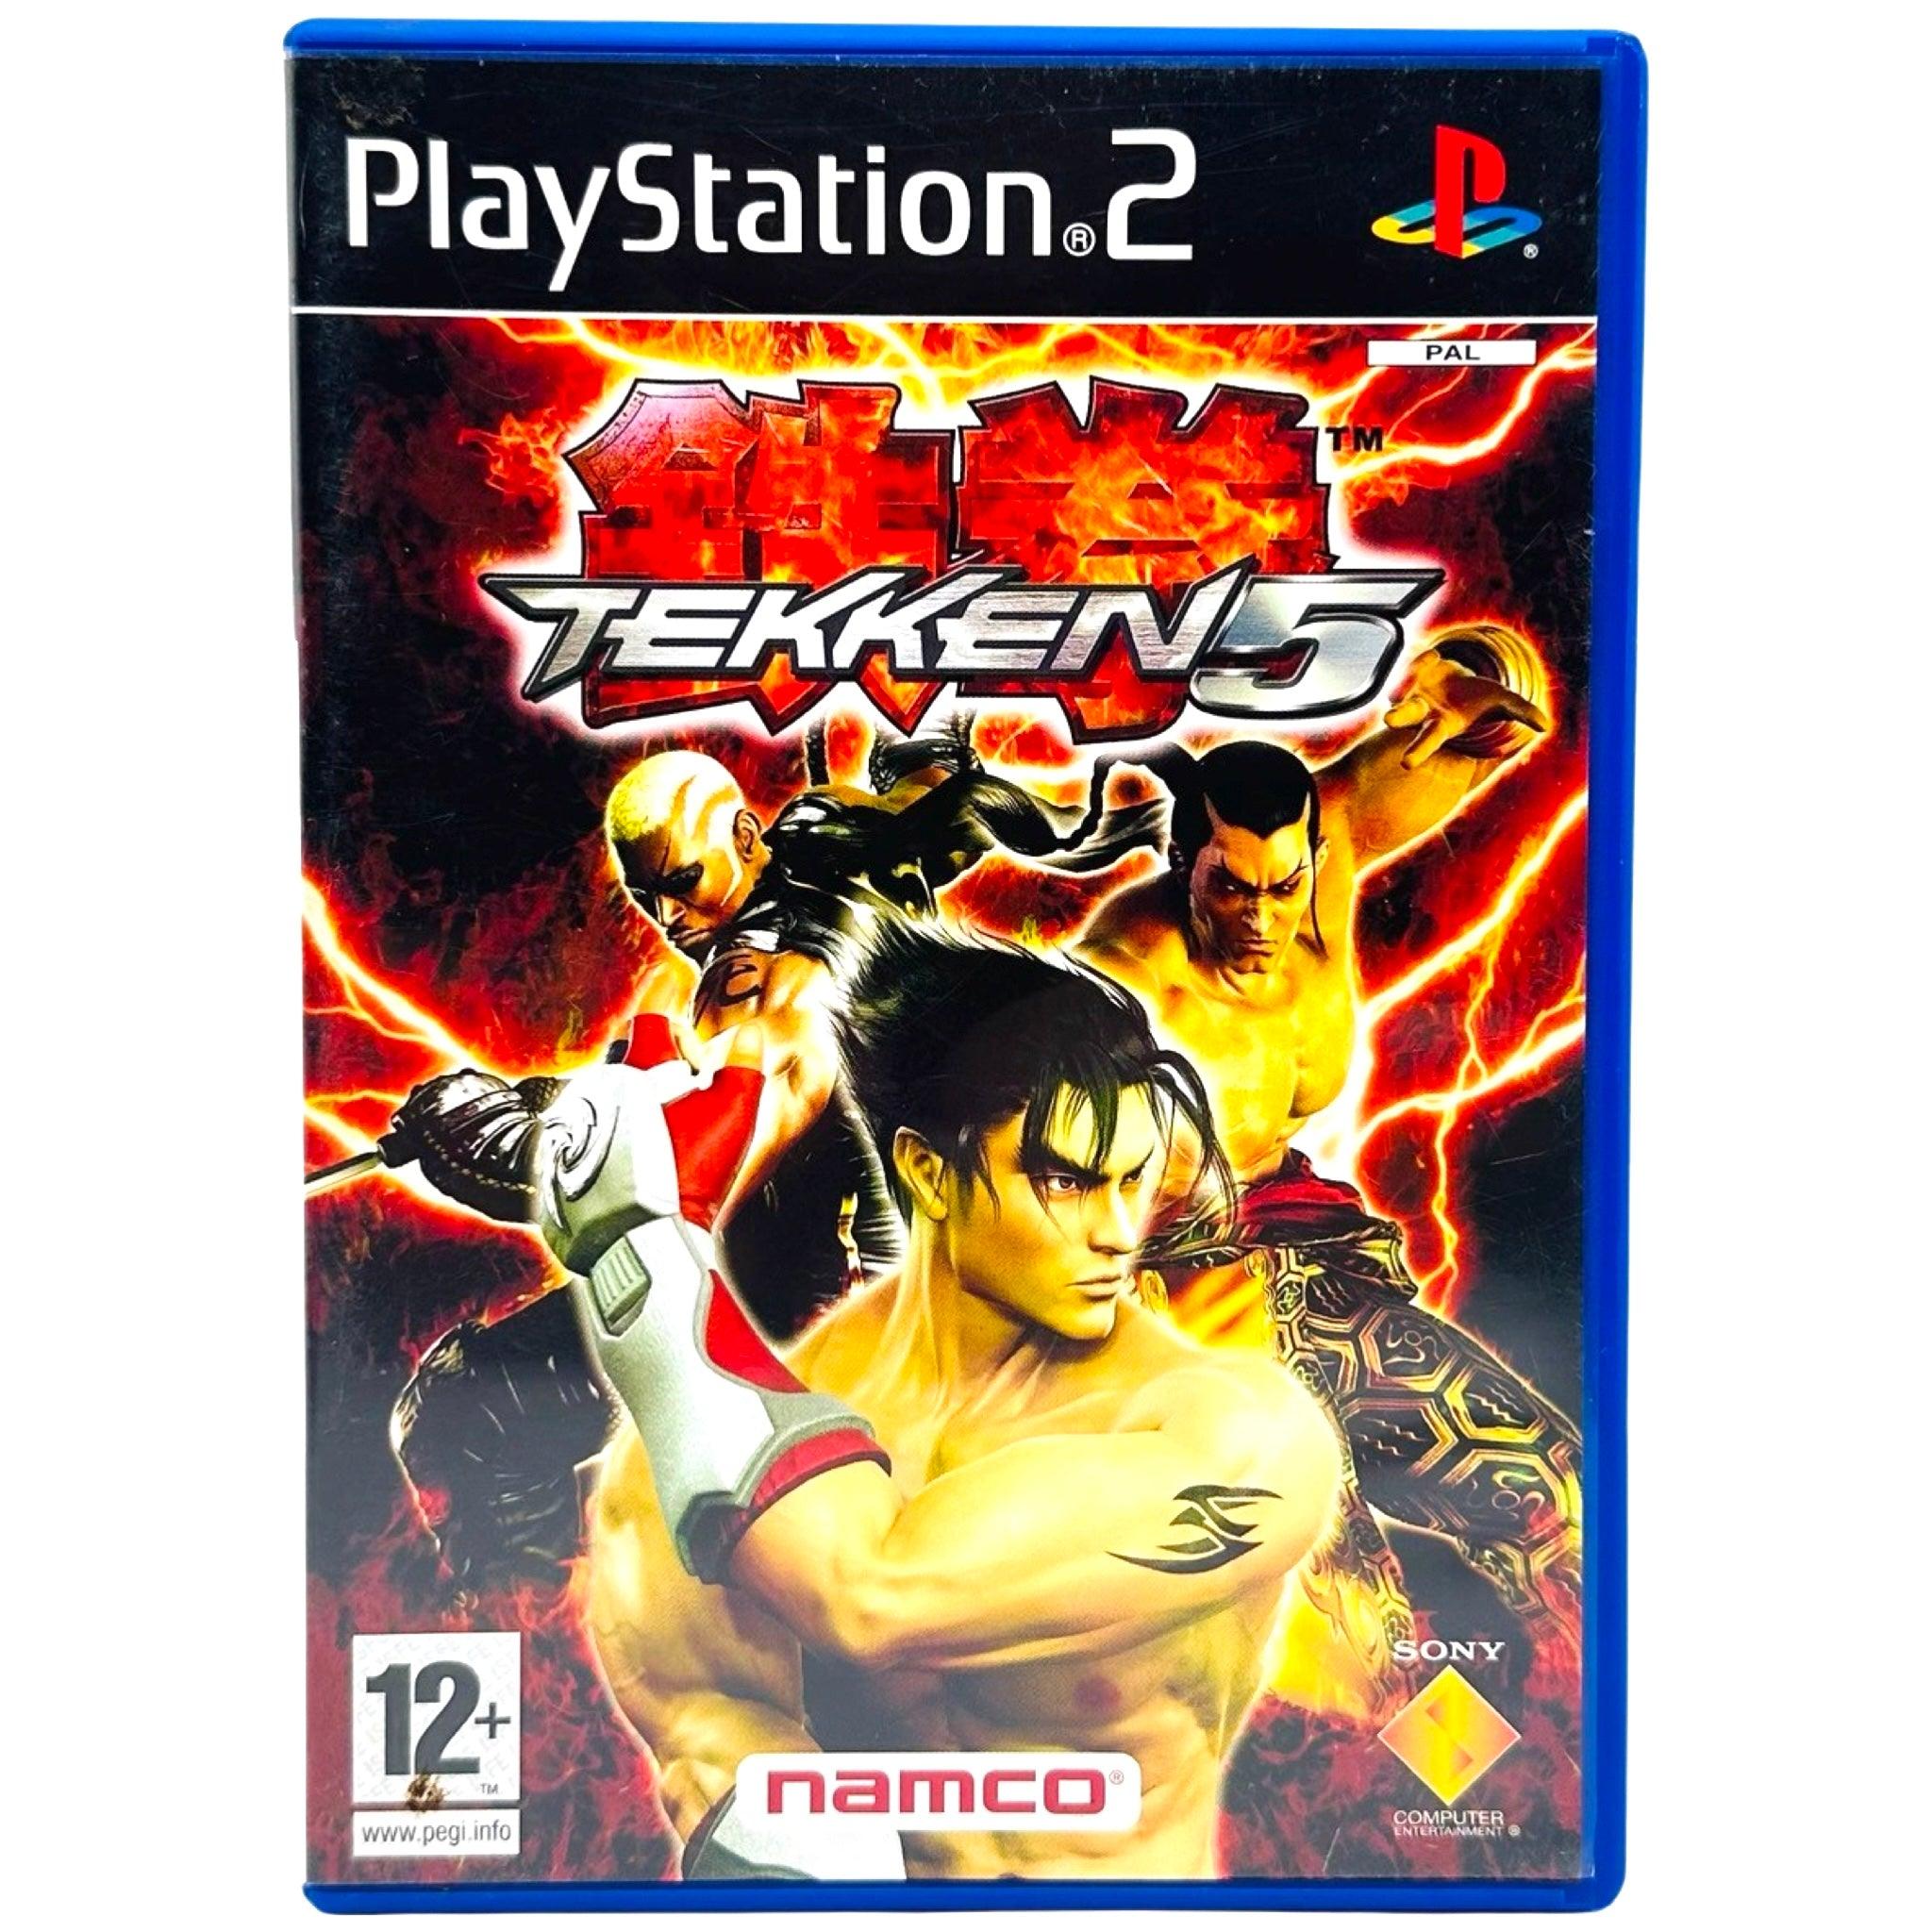 PS2: Tekken 5 - RetroGaming.no